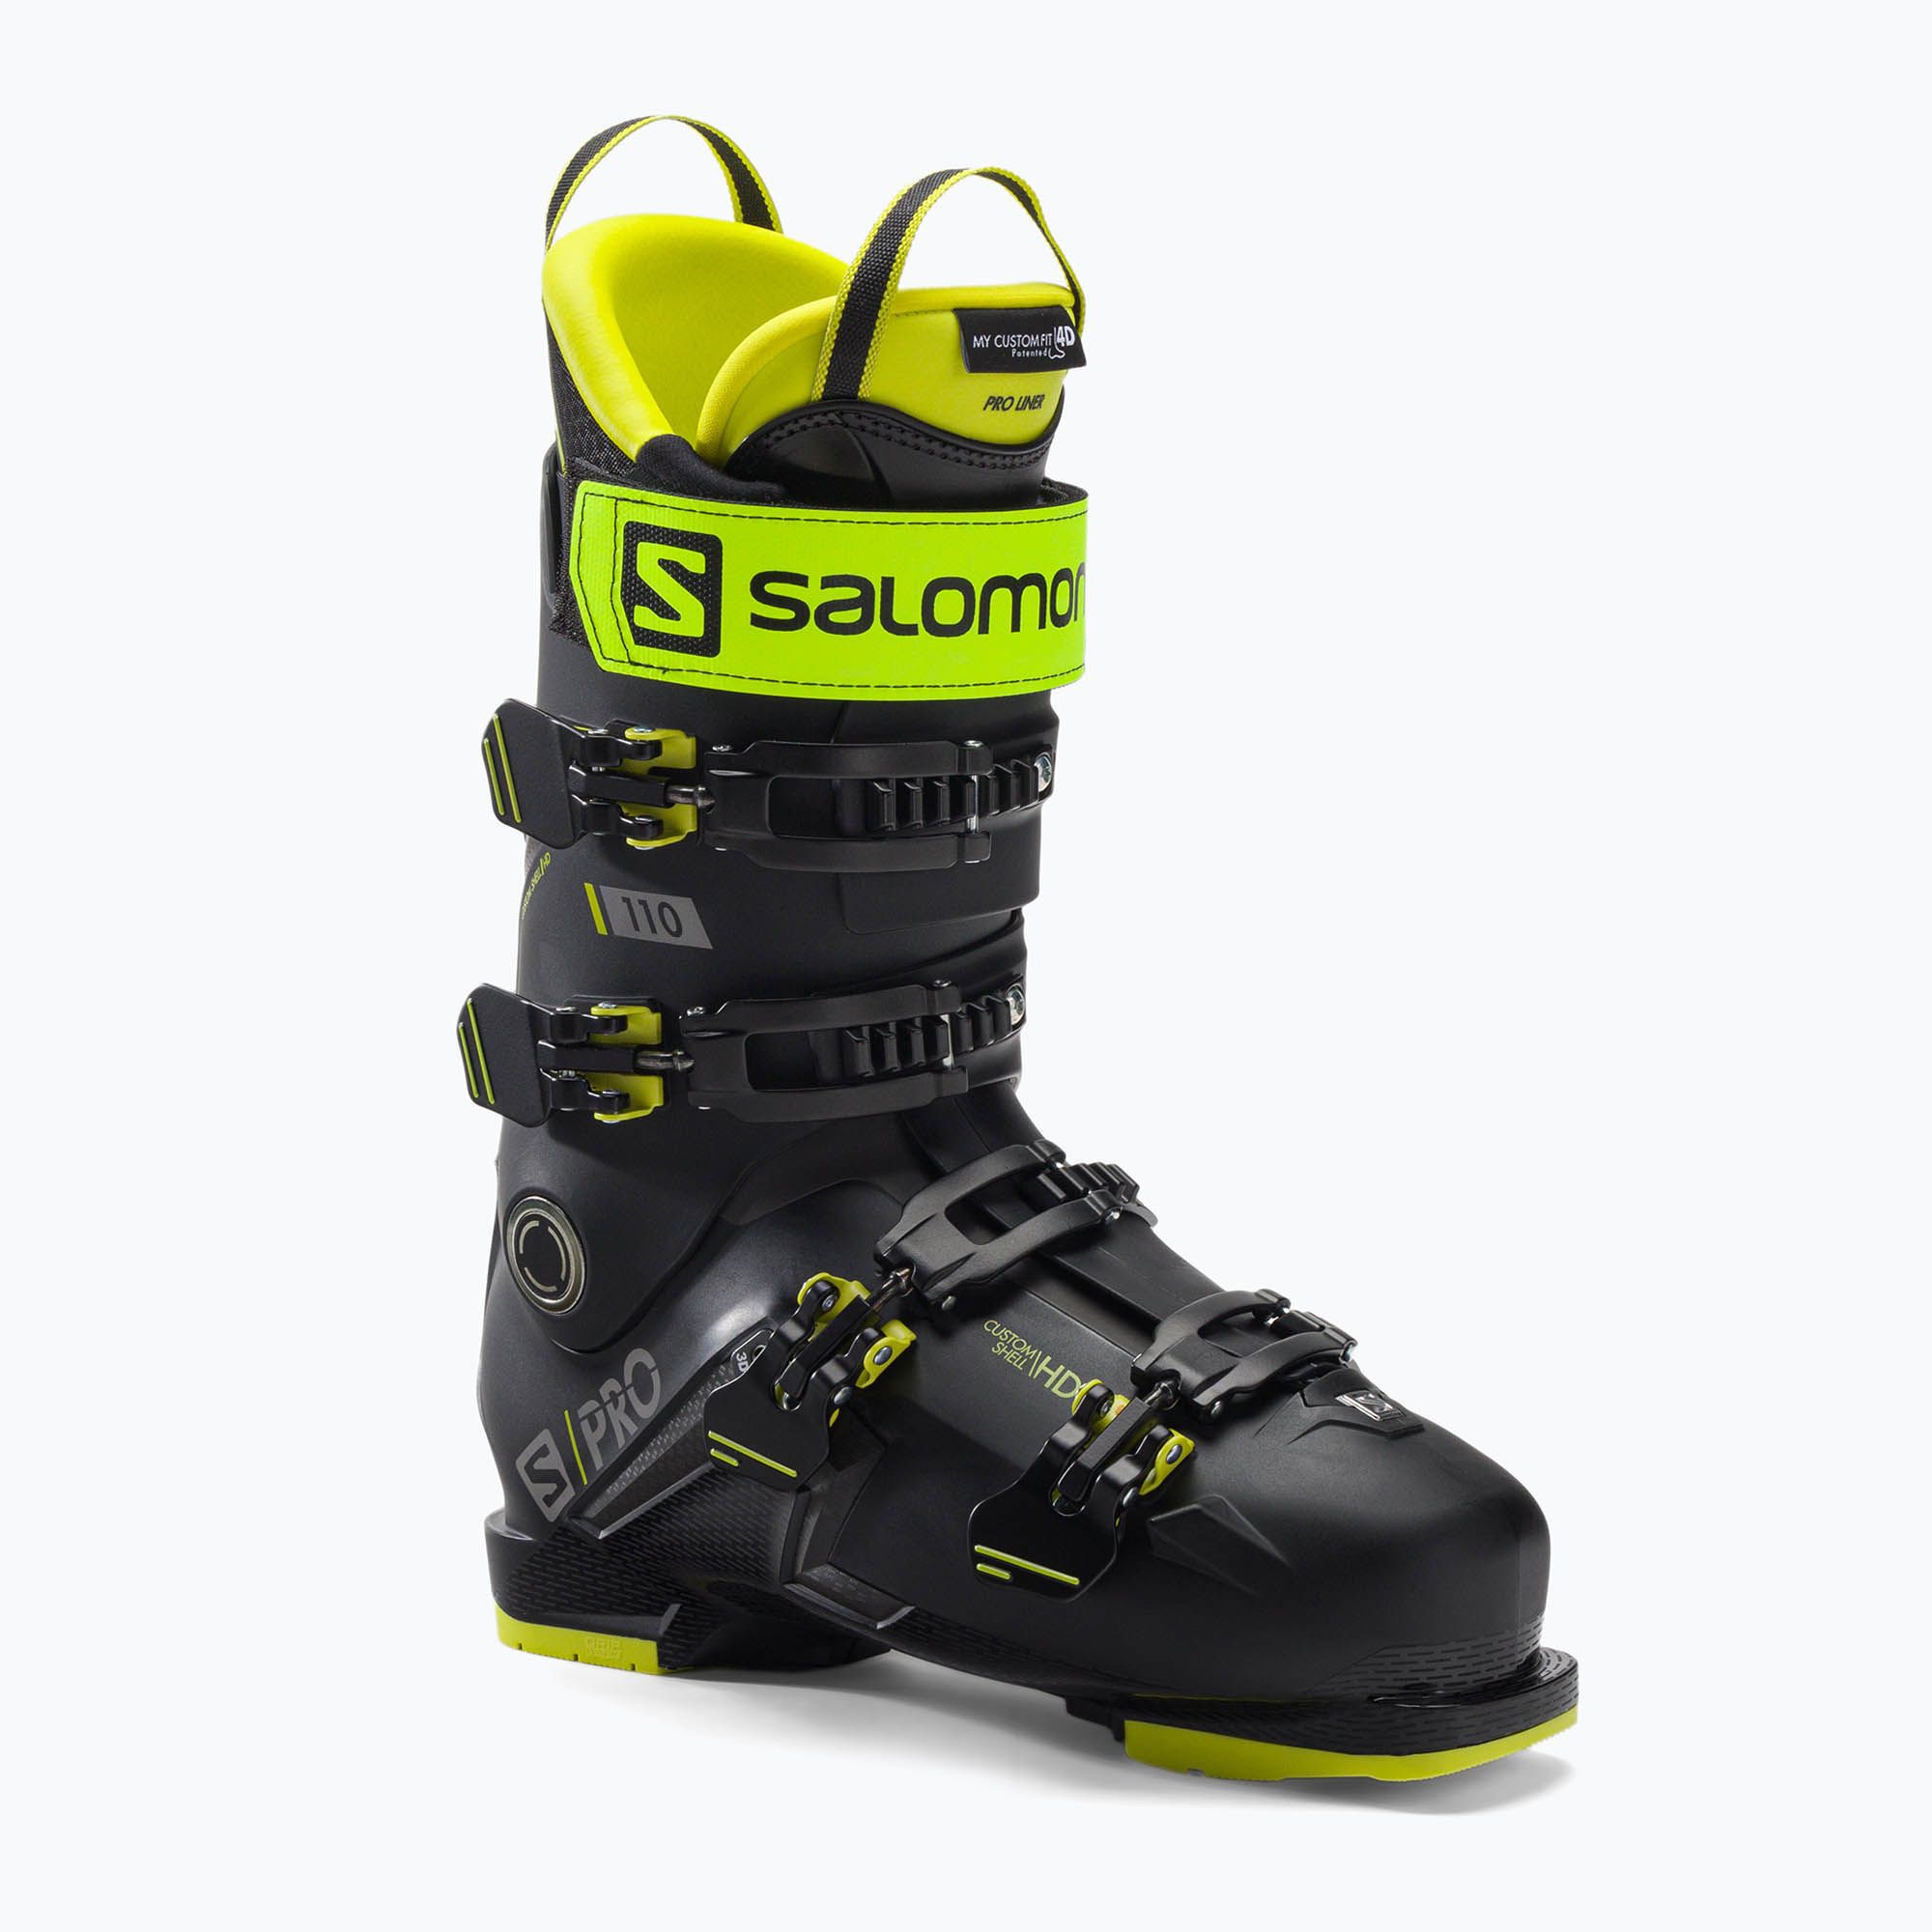 Buty narciarskie męskie Salomon S/Pro 110 GW czarne L41481500